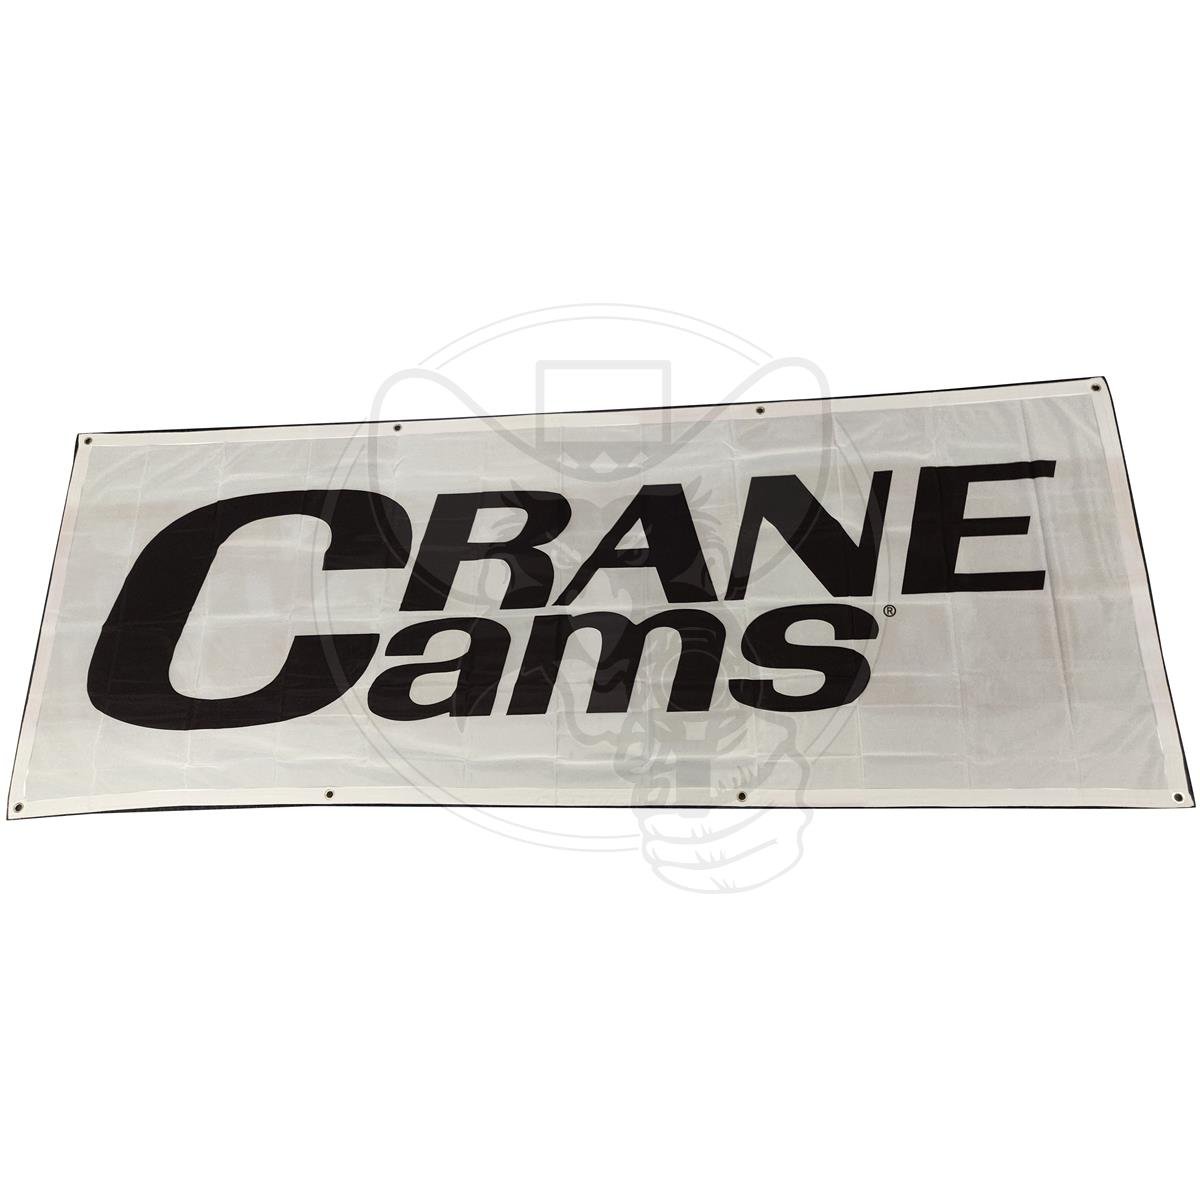 CRANE CAMS BANNER 30" X 90"